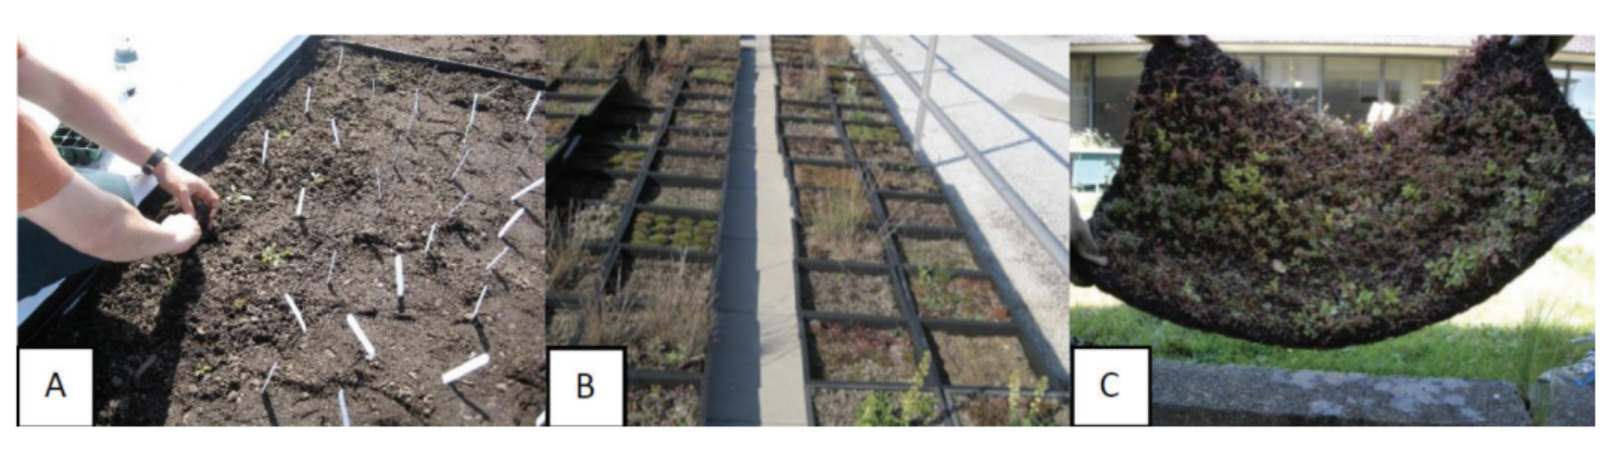 Exemples de trois systèmes de toits végétalisés différents